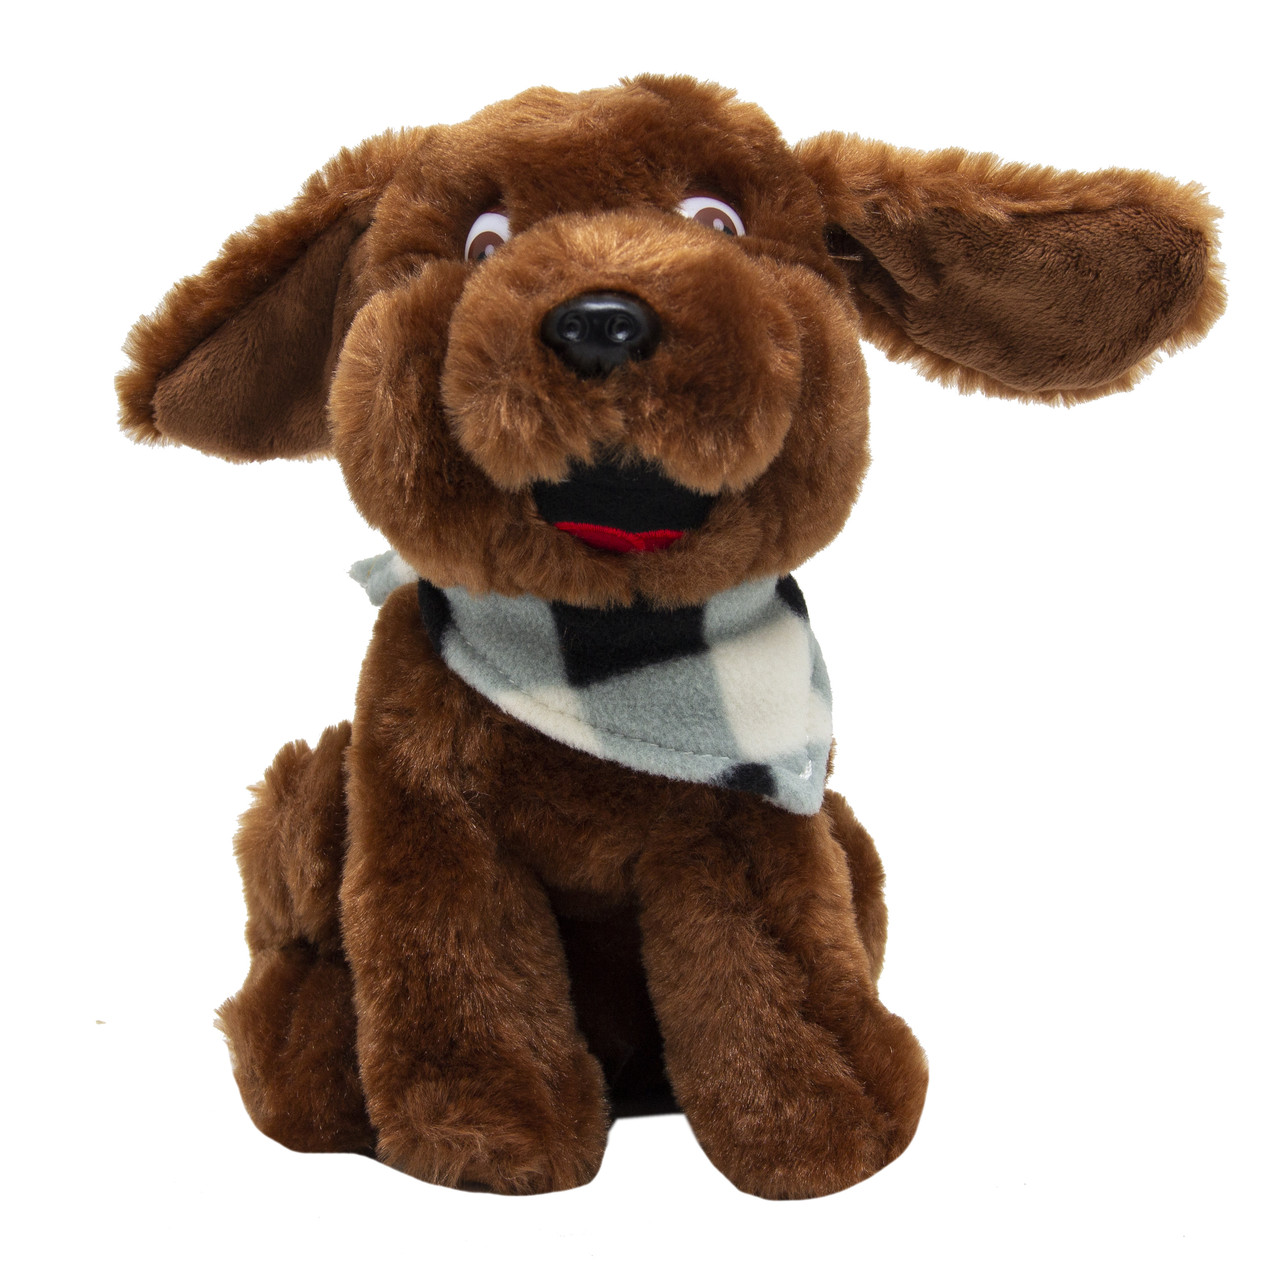 М'яка іграшка - щеня зимове, 21 см, коричневий, поліестер (M1622221-1)